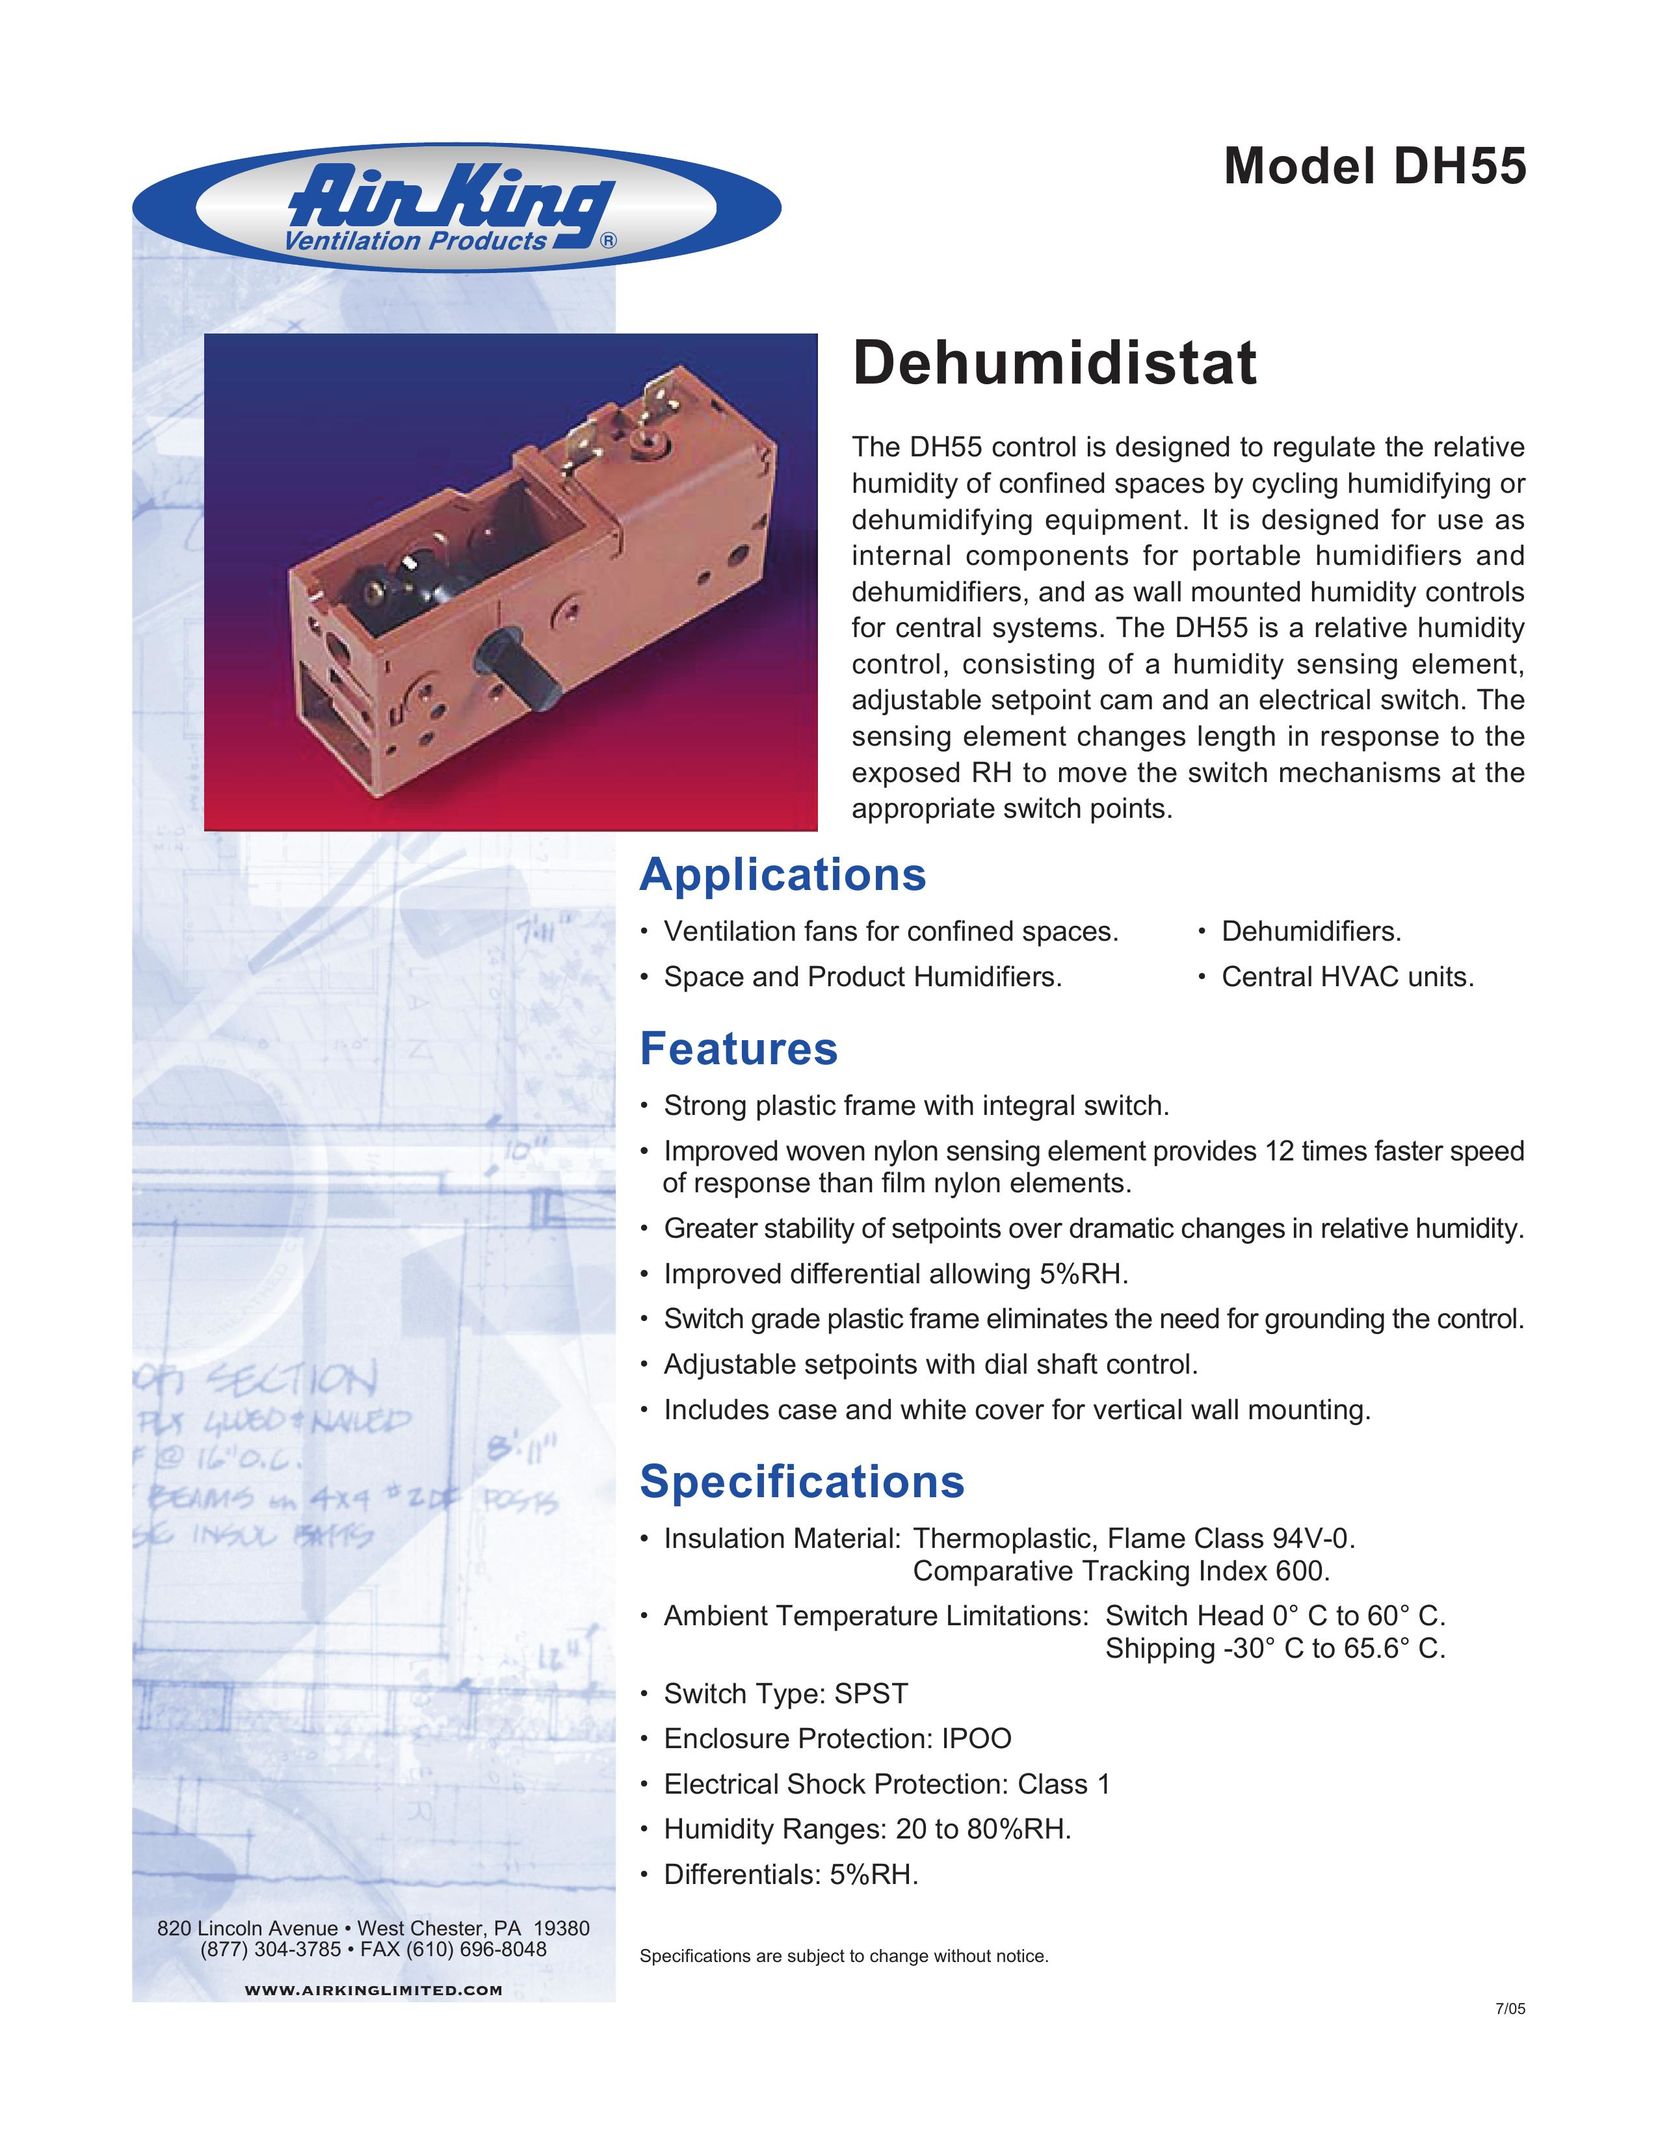 Air King DH55 Dehumidifier User Manual